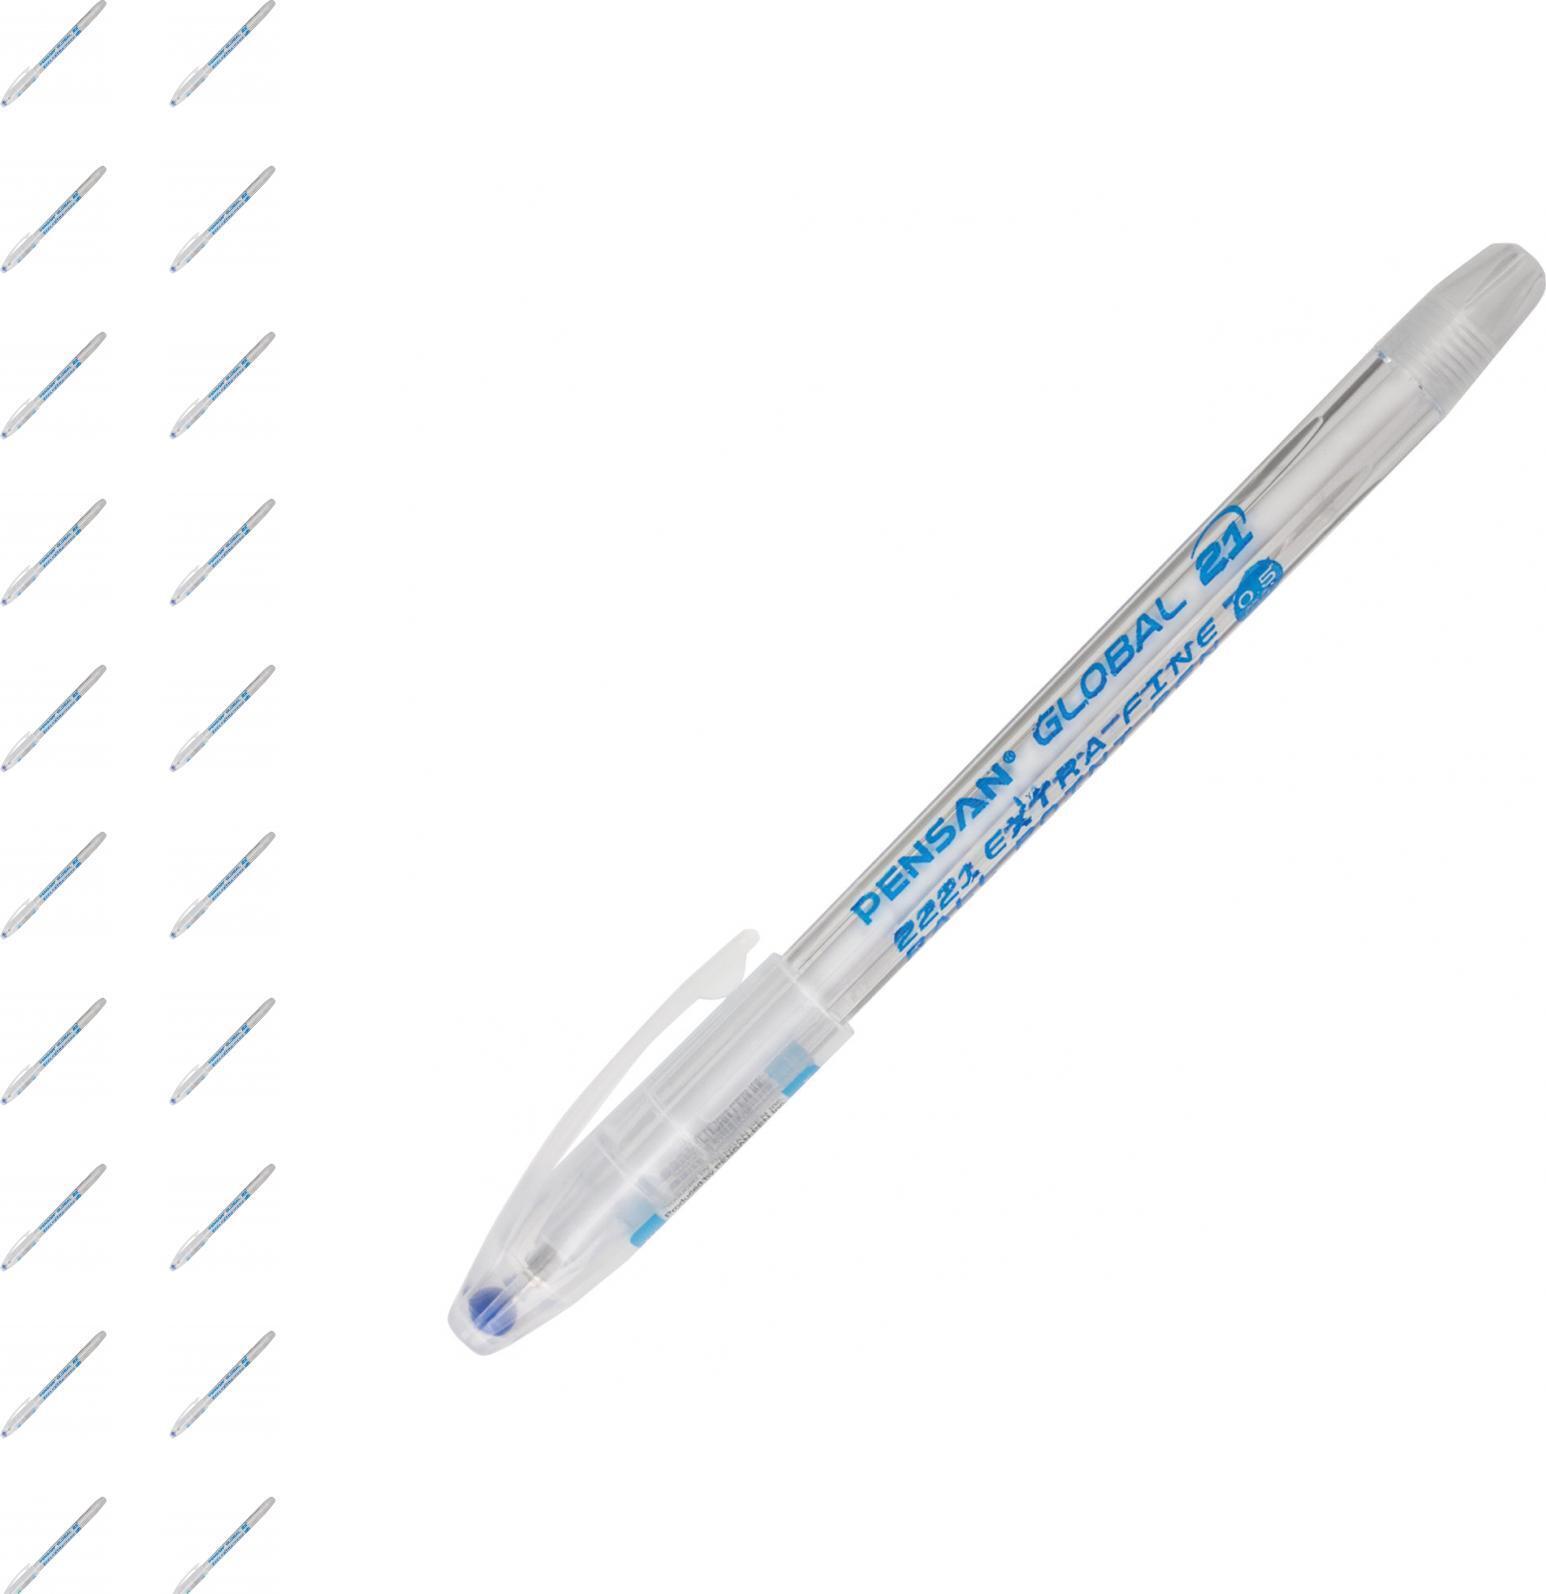 Ручка с прозрачным корпусом. Ручка Pensan Global 21. Ручка Pensan Global 21 синяя. Масляная ручка Pensan Global-21. Pensan «Global-21», синяя, корпус прозрачный.